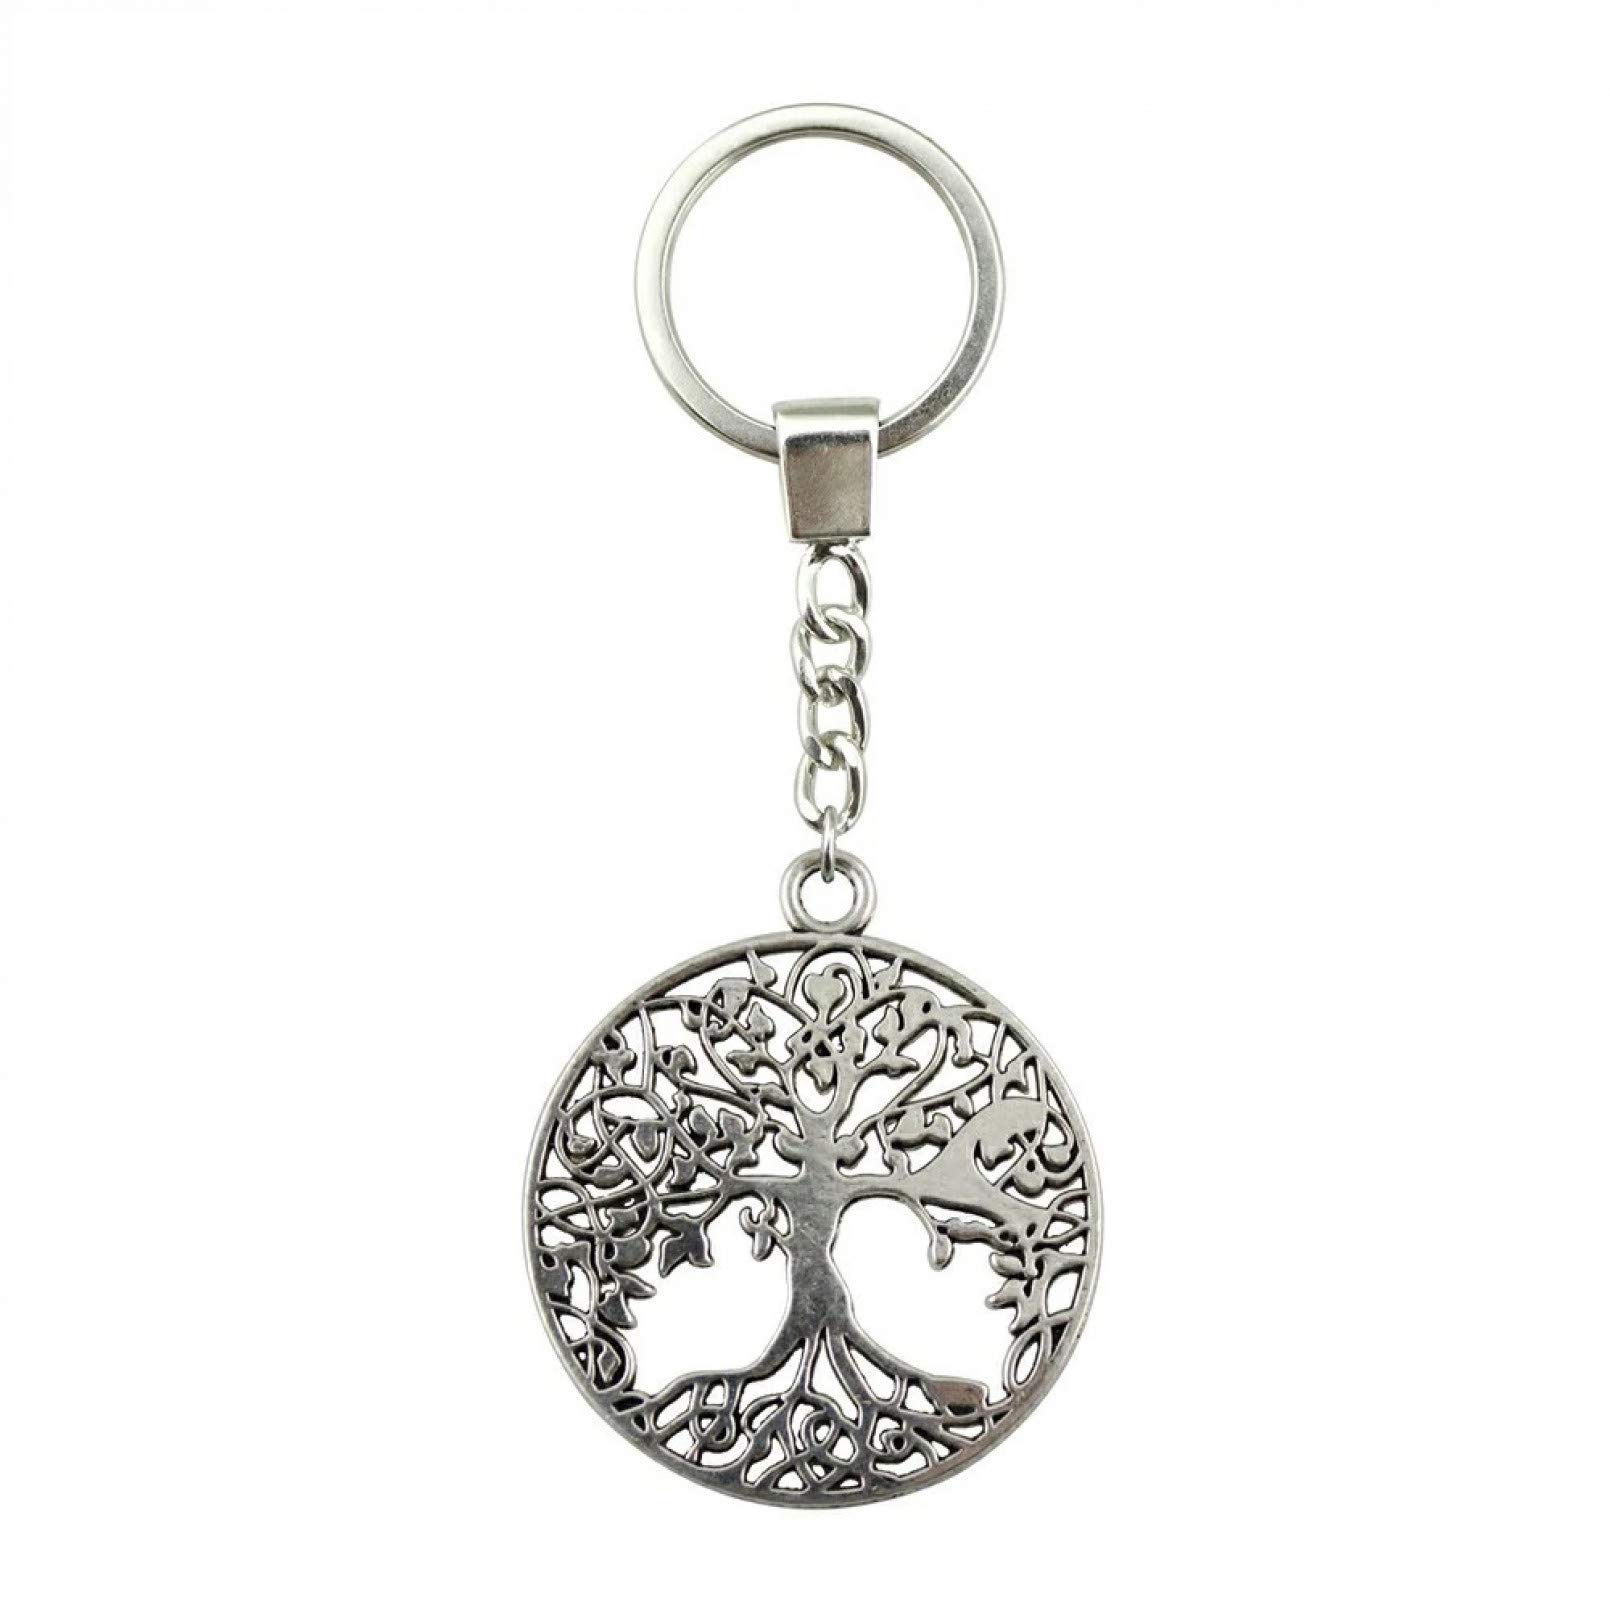 JLZK Silber Farbe 40X35Mm Baum des Lebens Schlüsselanhänger Handgefertigter Metall Schlüsselanhänger Partygeschenk von JLZK